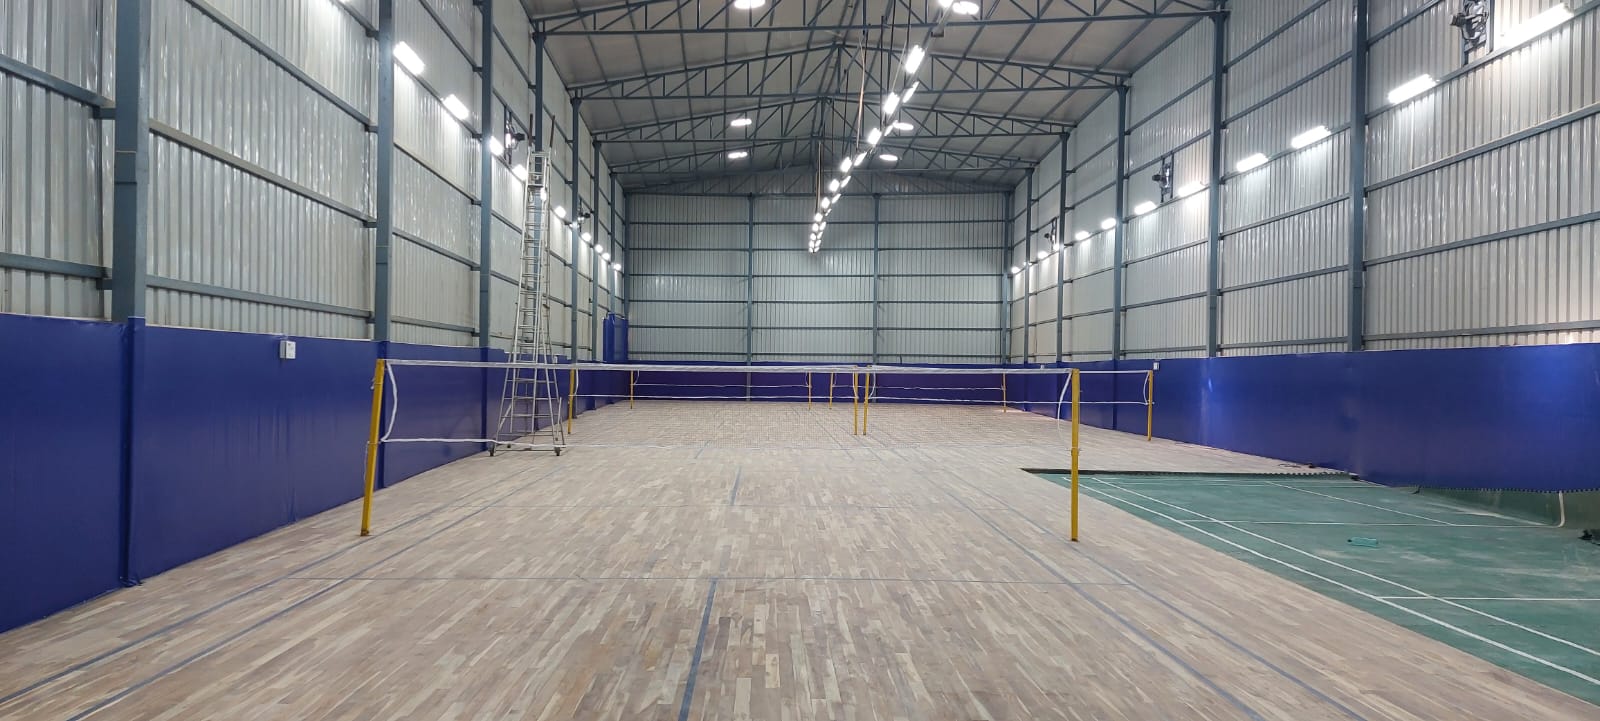 Spuddy Badminton Academy Ahinsa Khand